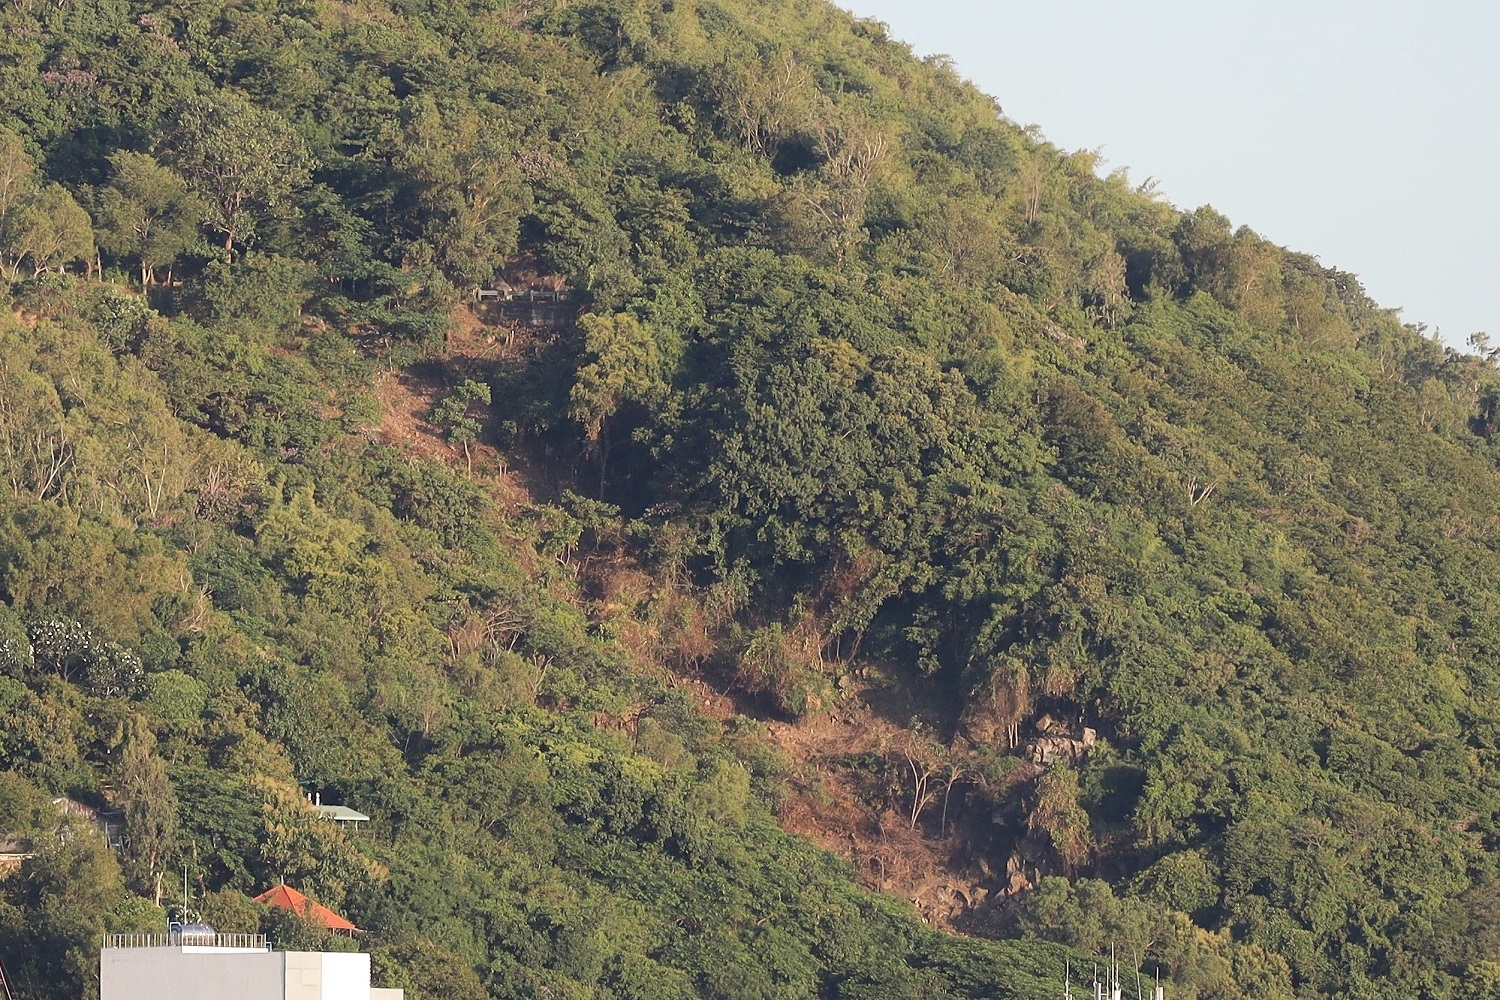 Núi Nhỏ (TP. Vũng Tàu) và hình ảnh một mảng cây xanh bị chặt hạ, gây thắc mắc trong nhân dân những ngày qua